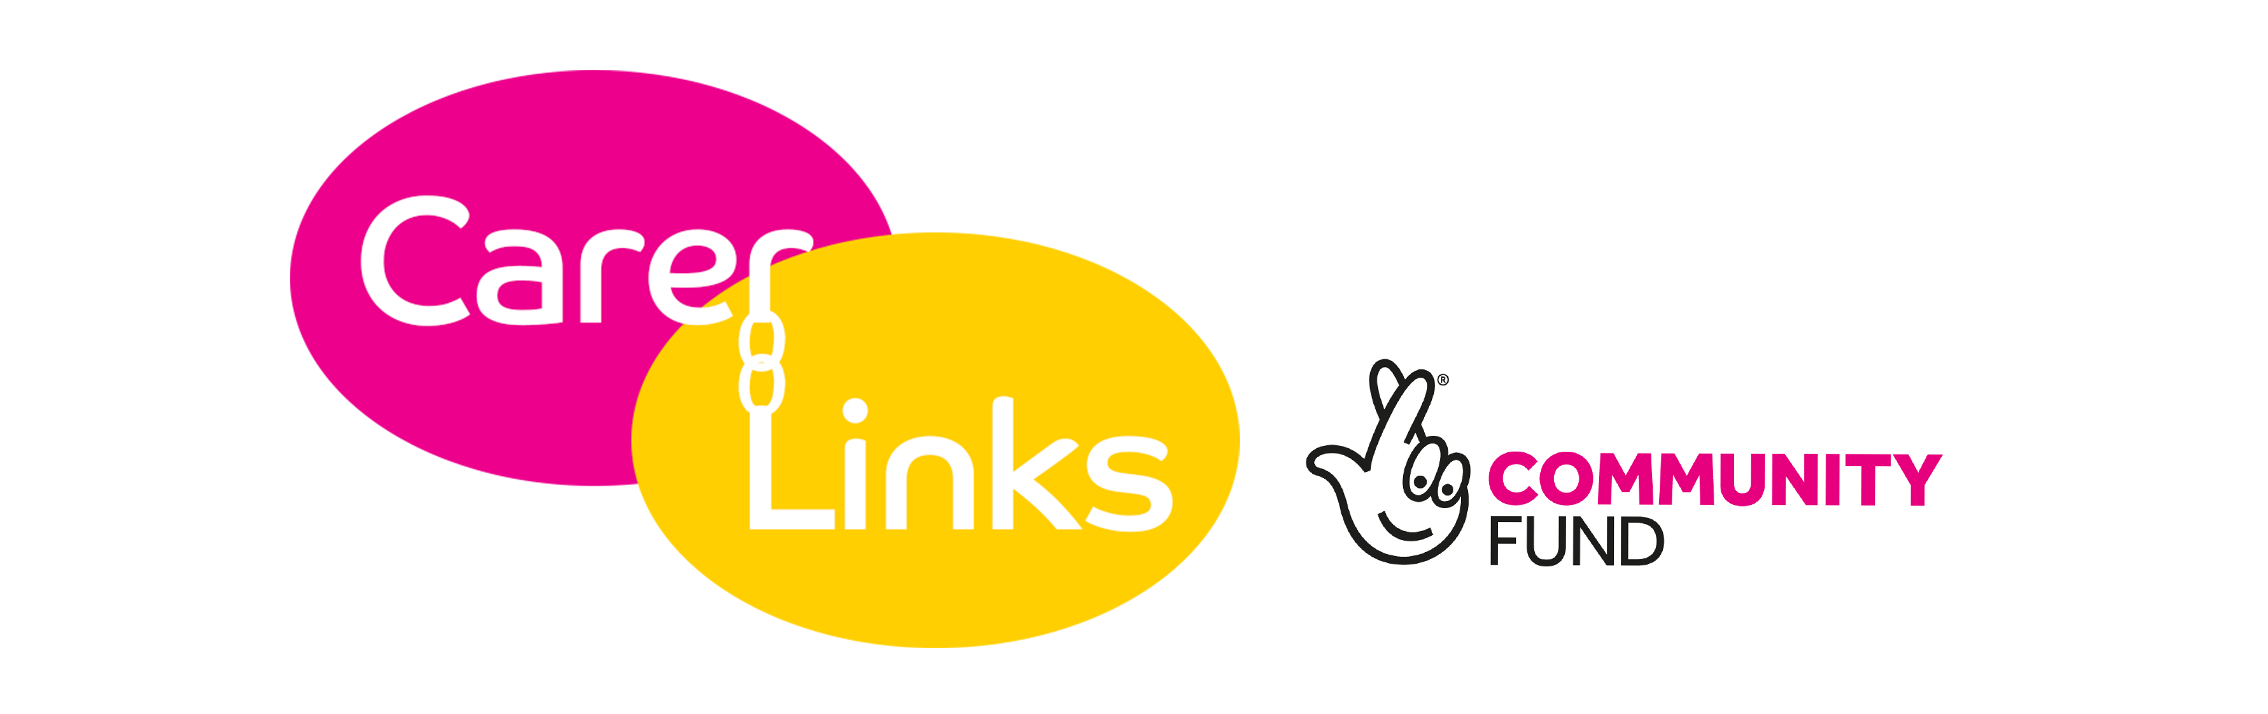 Carer Links Service Logo